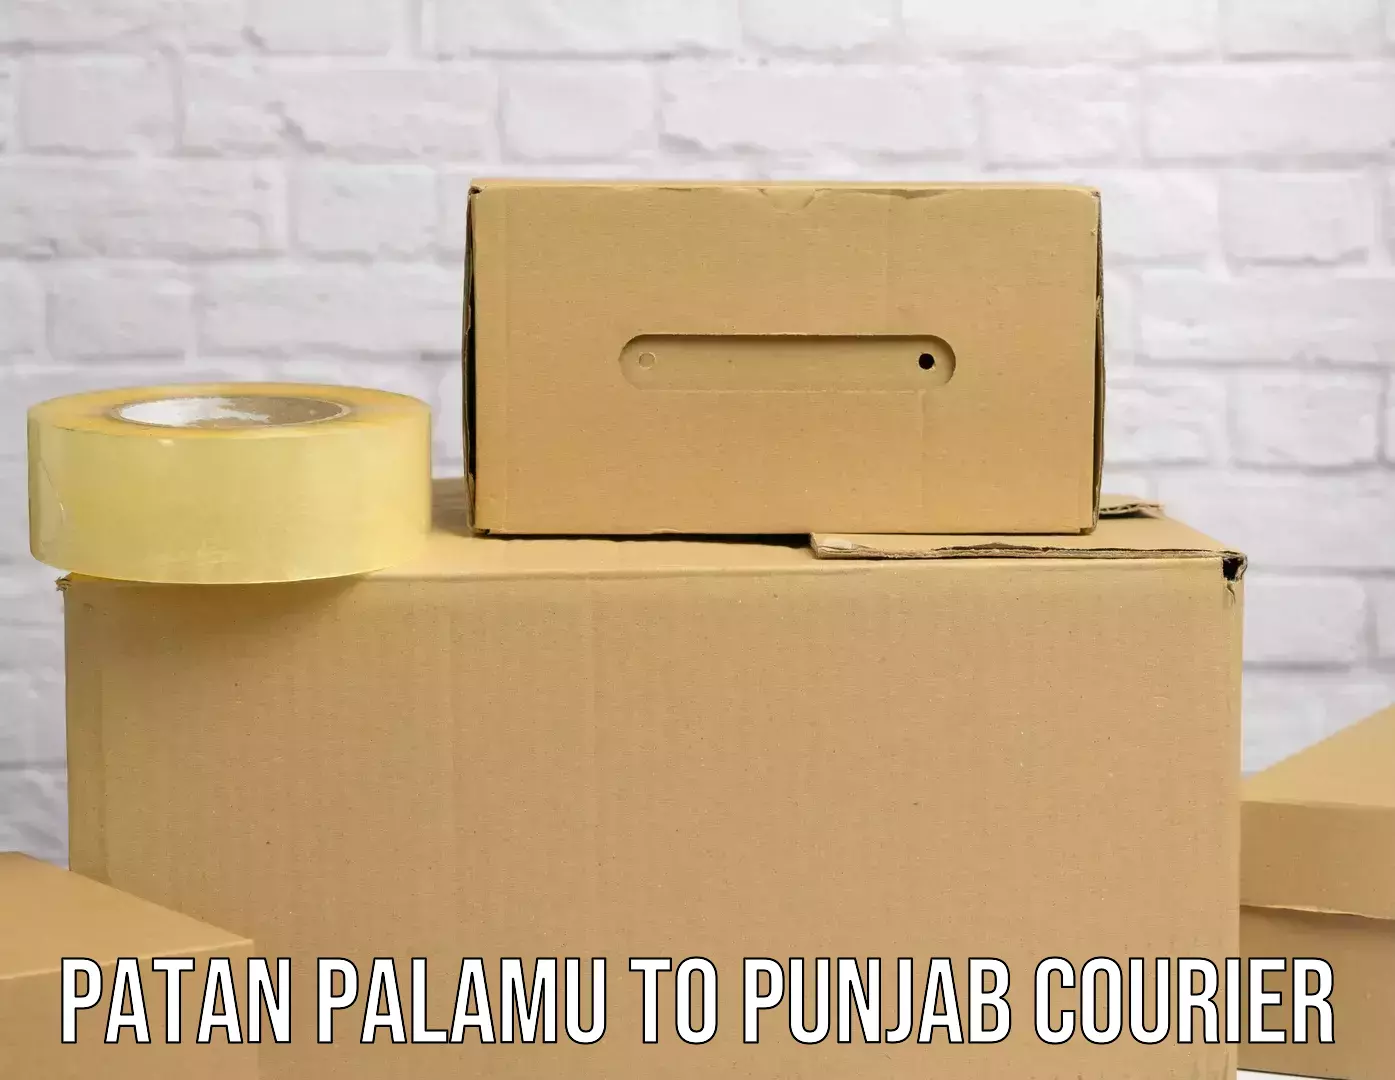 Parcel handling and care Patan Palamu to Punjab